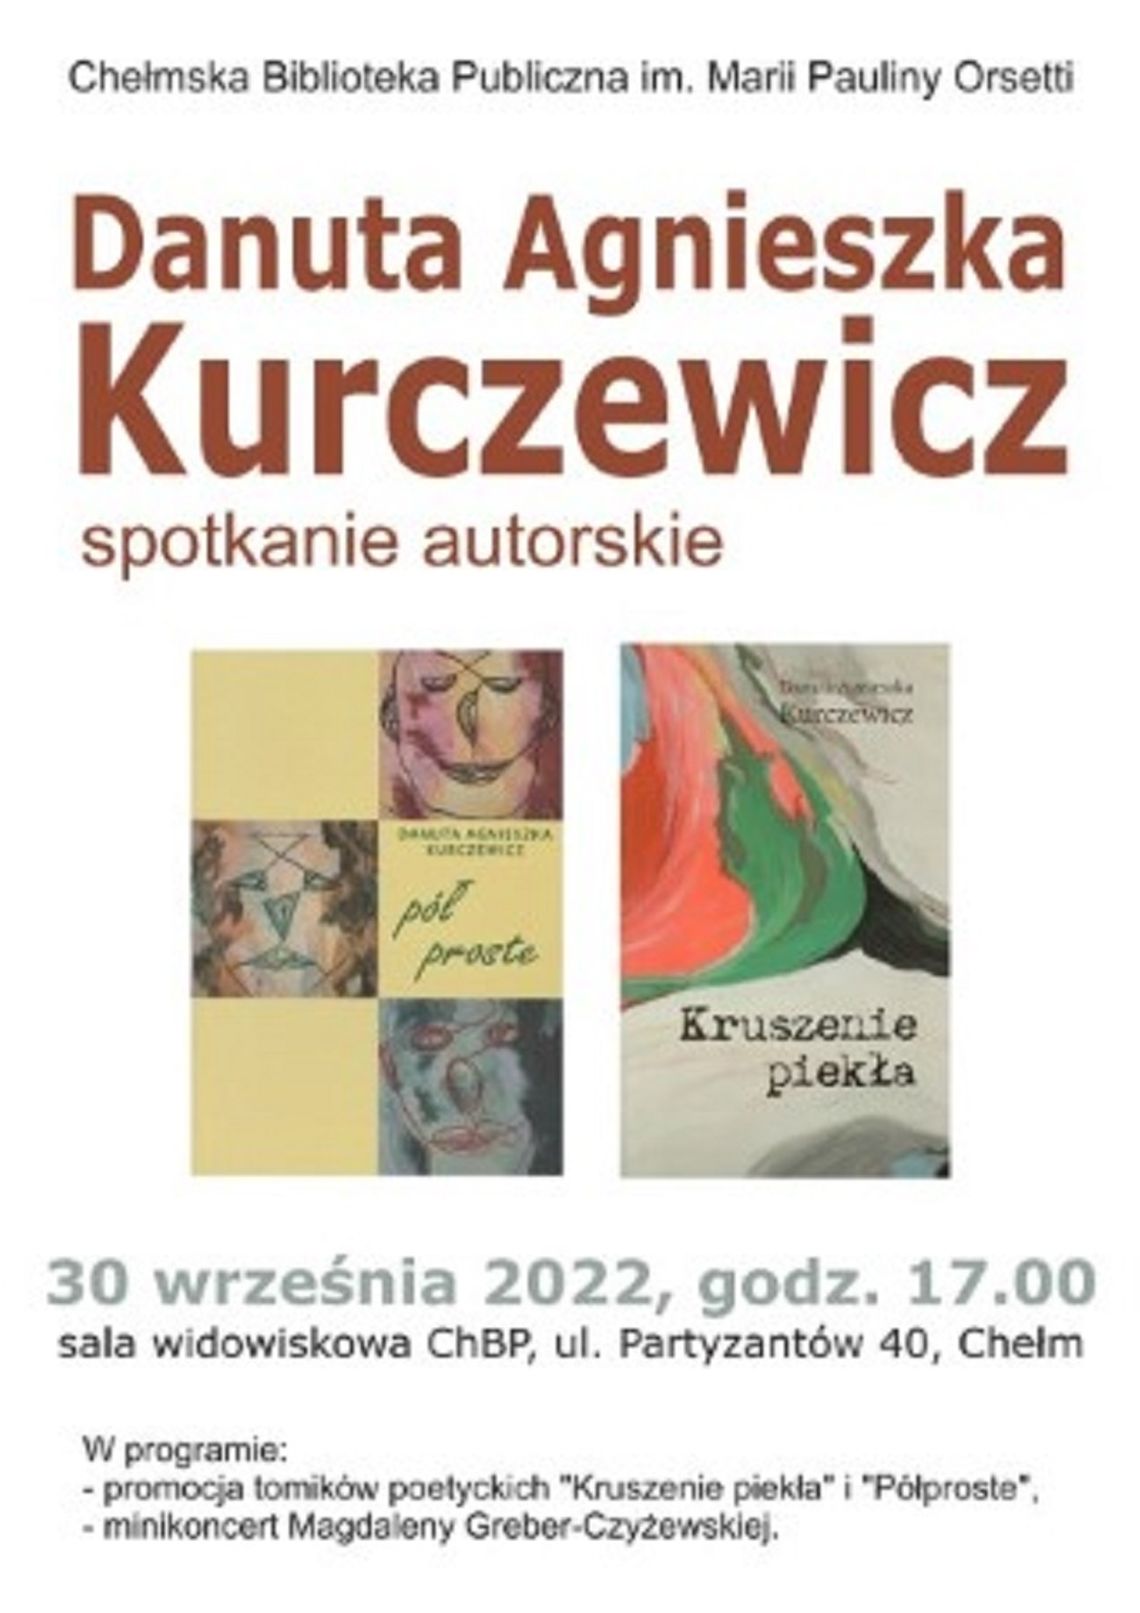 Chełm: Kobieta w poezji - spotkanie autorskie Danuty Kurczewicz